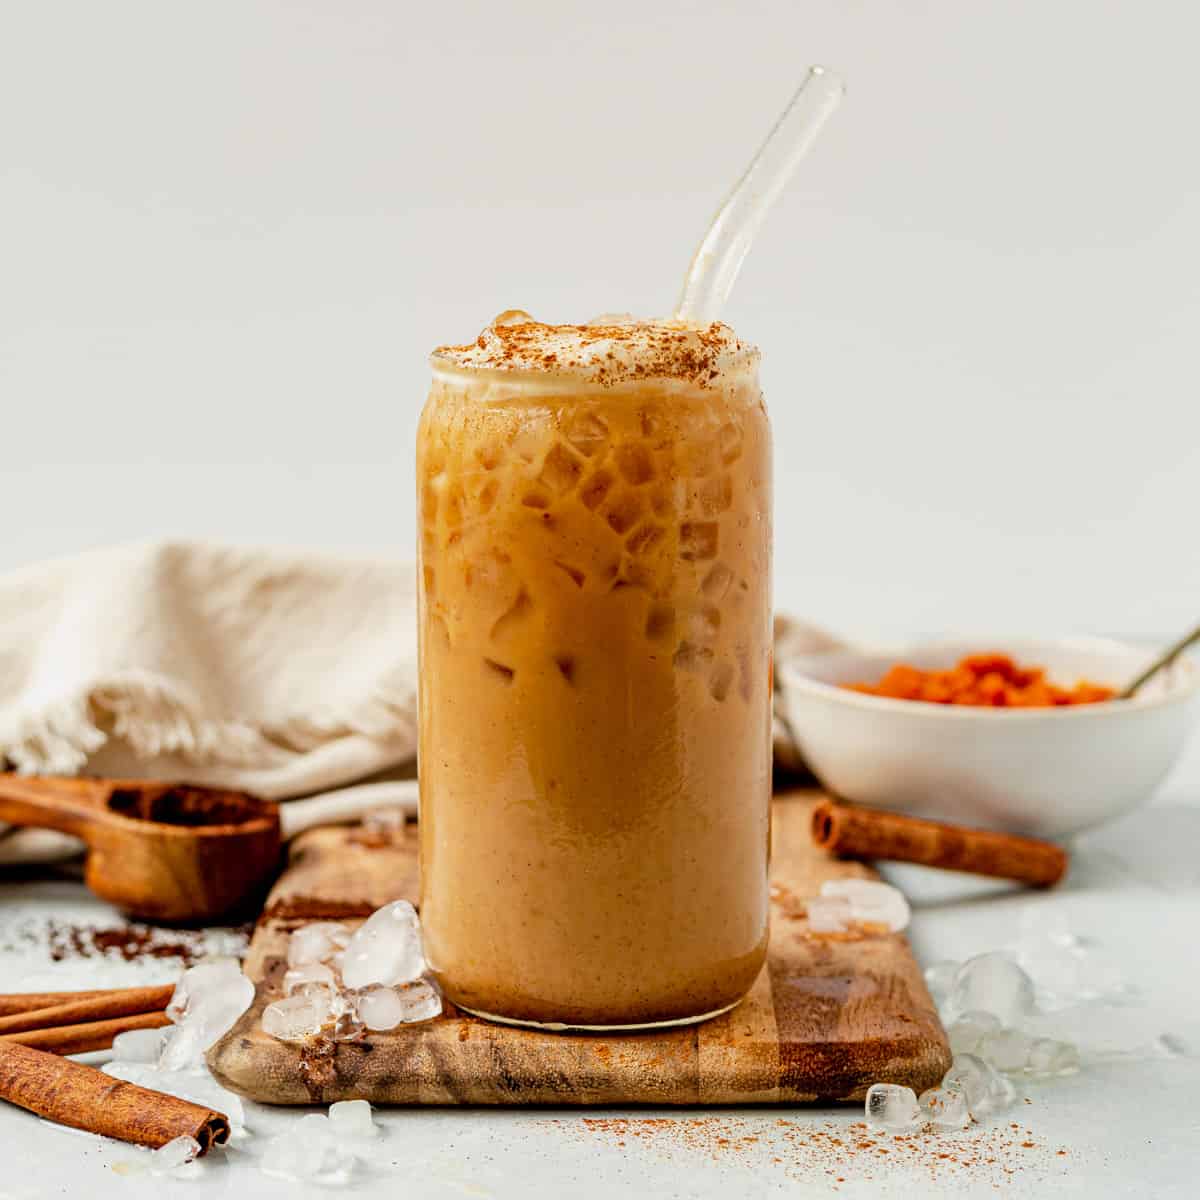 https://whatmollymade.com/wp-content/uploads/2022/08/iced-pumpkin-spice-latte-recipe.jpg